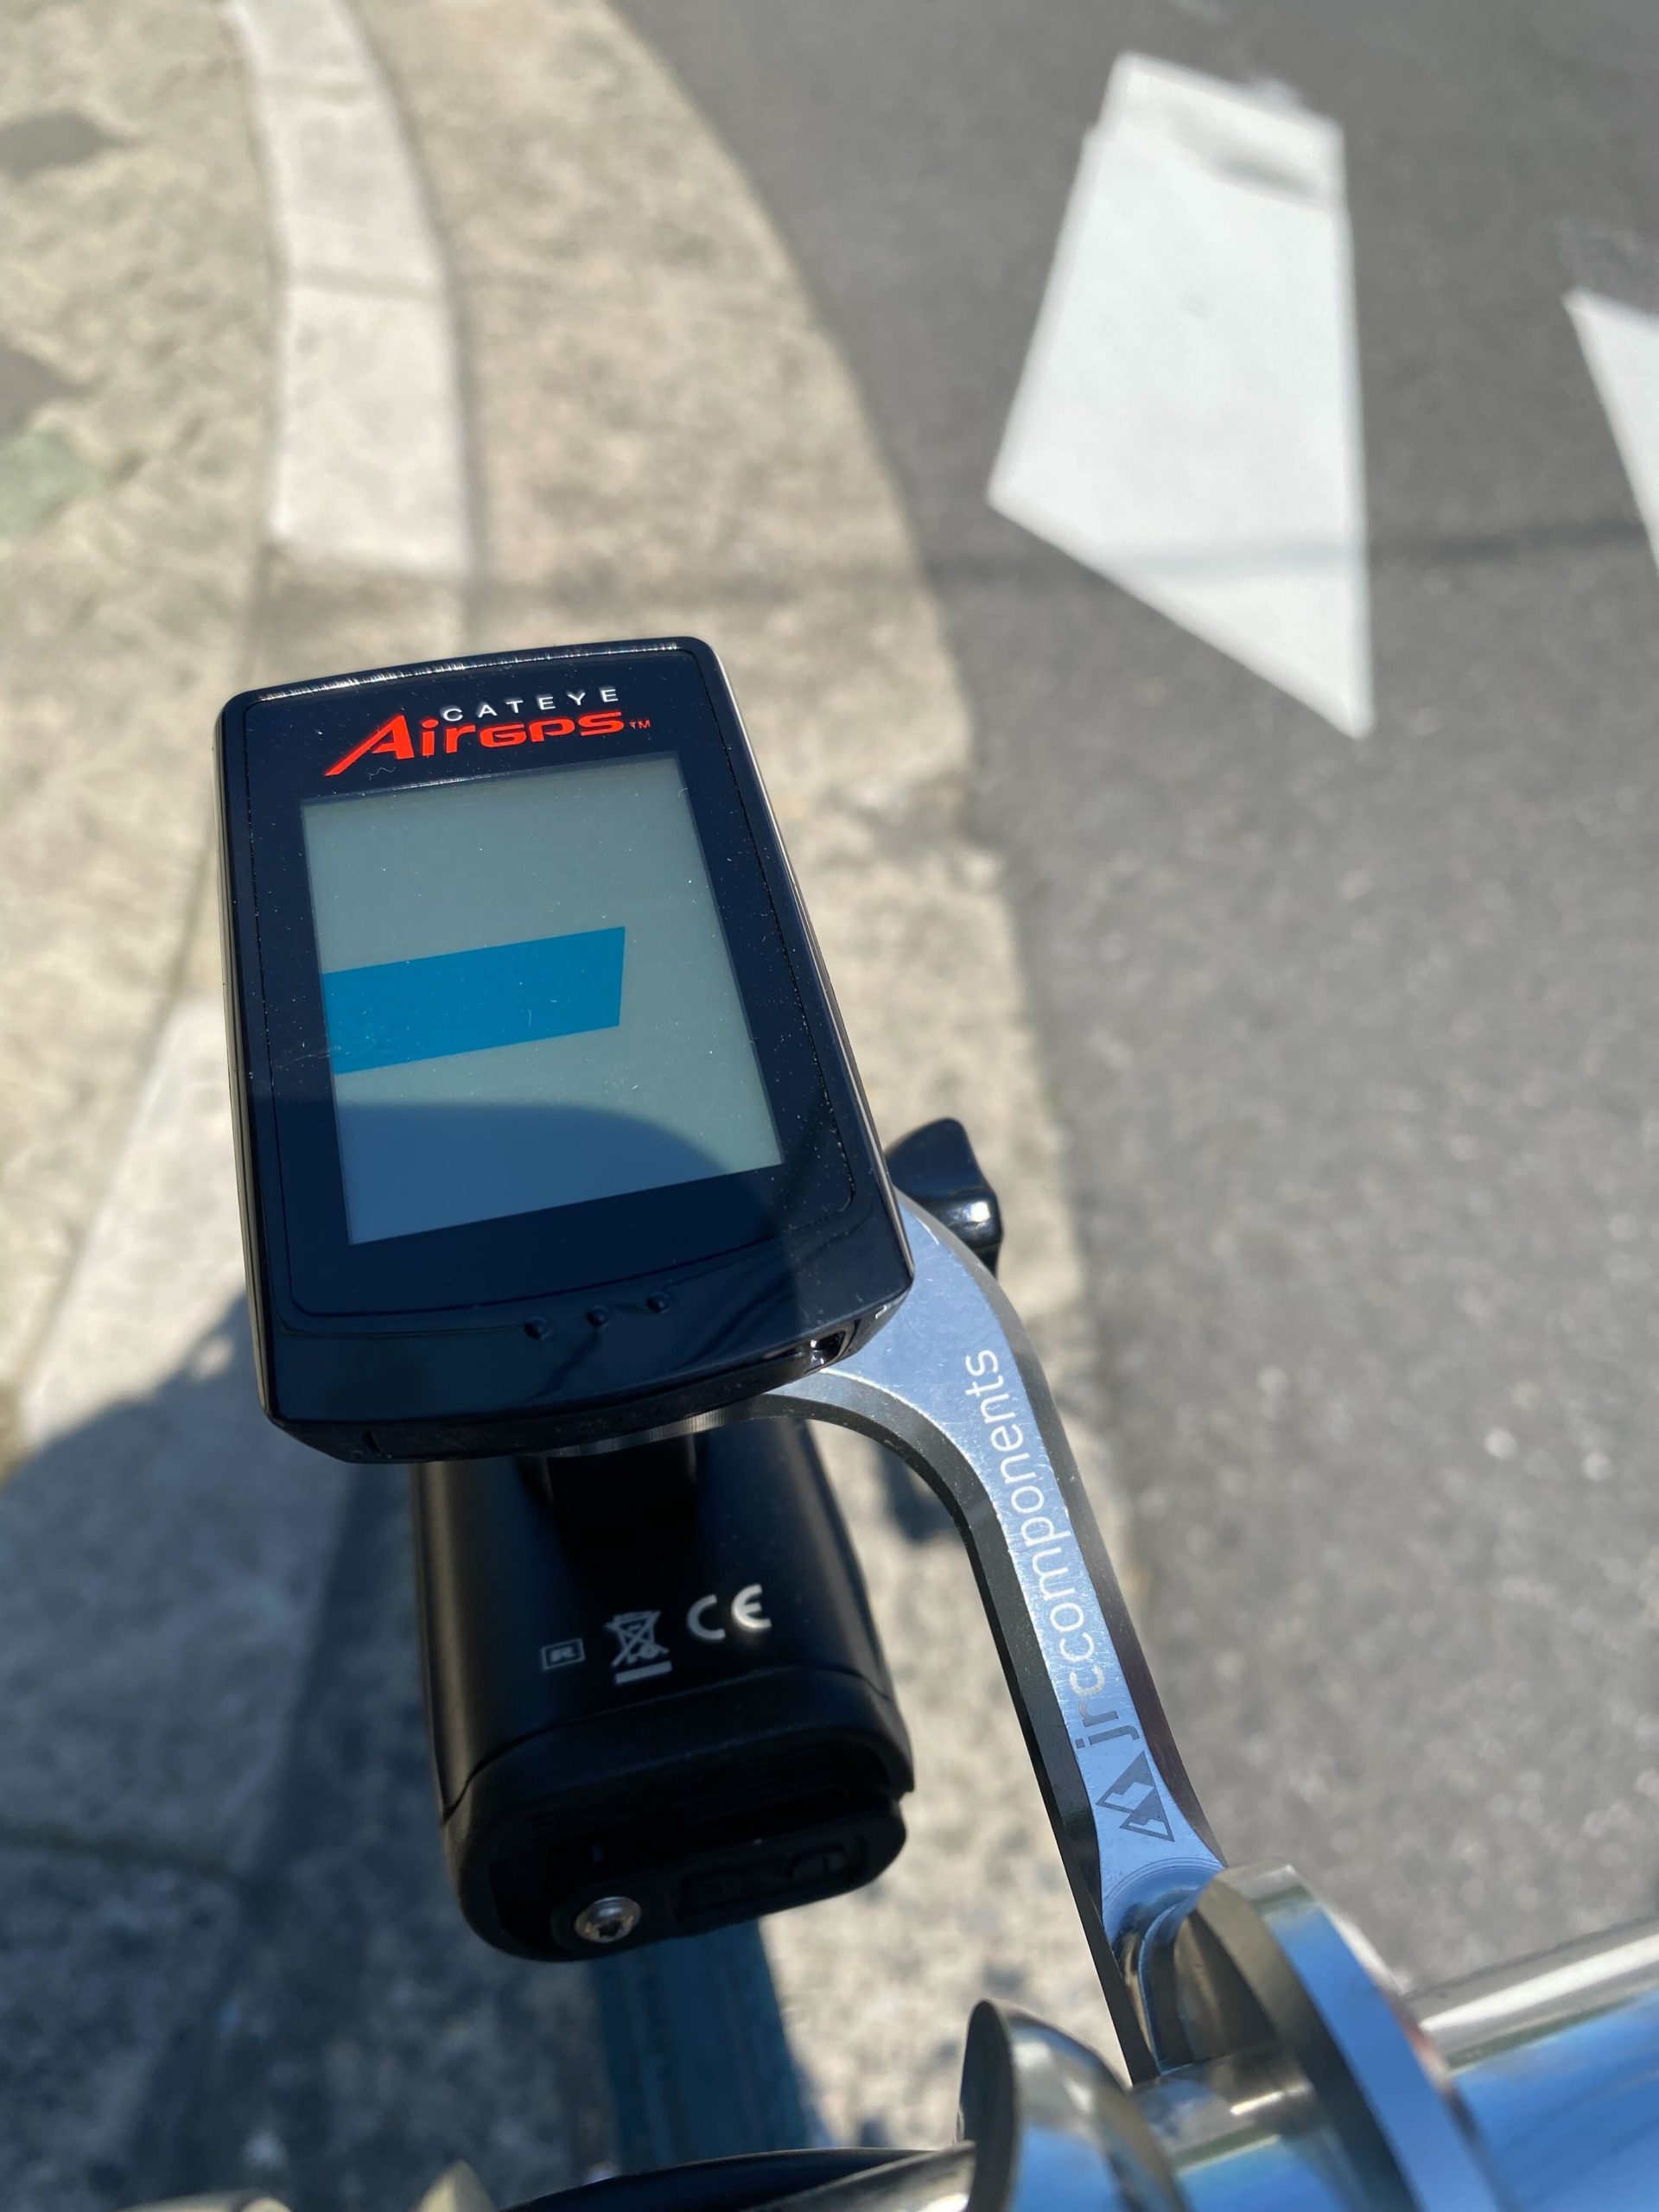 CATEYEの新型サイコン【Air GPS】使ってみた | スポーツバイク 